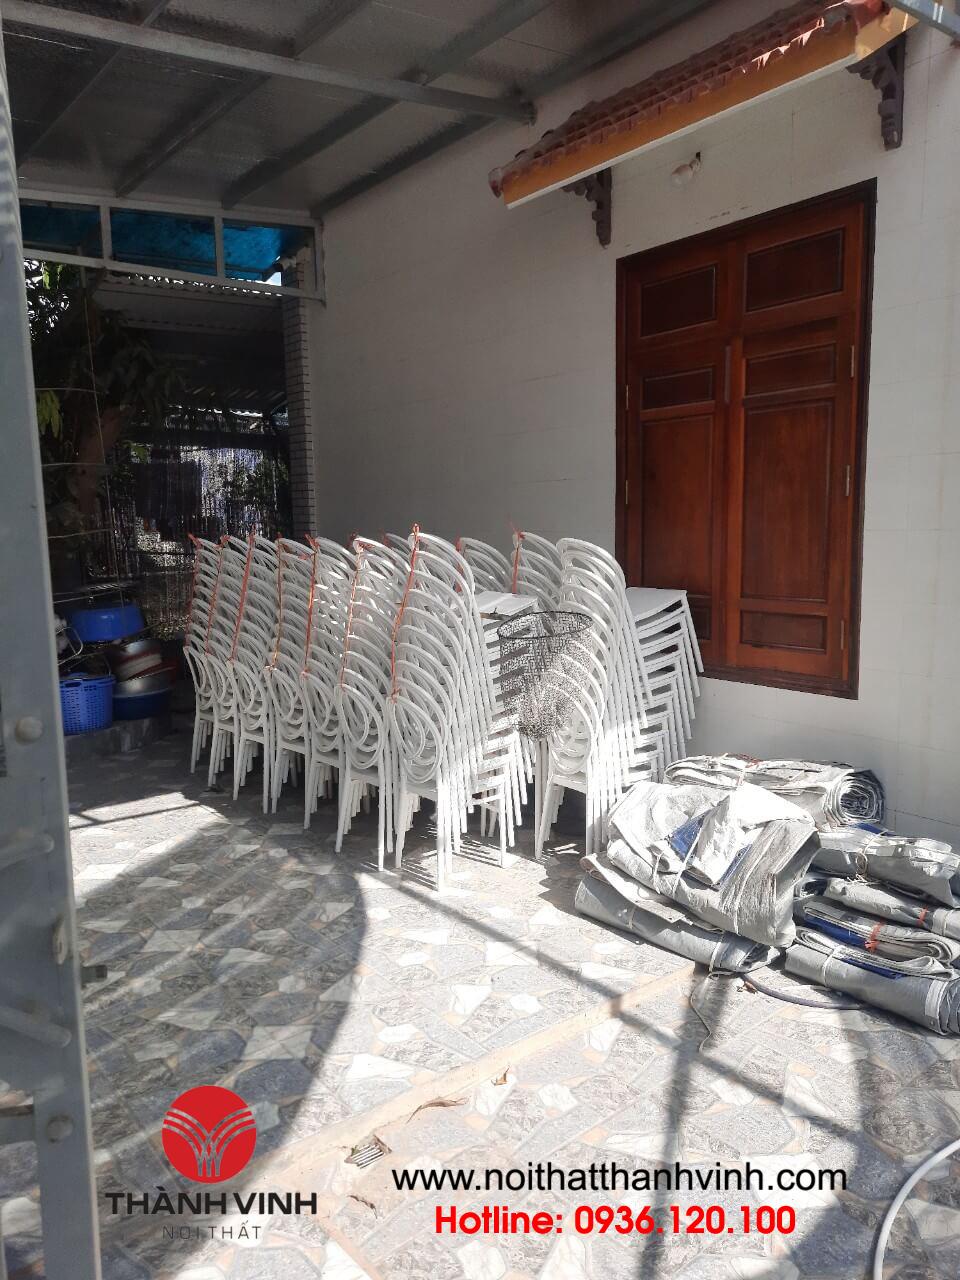 Ghế louis nhựa cho nhà rạp tại Bắc Giang